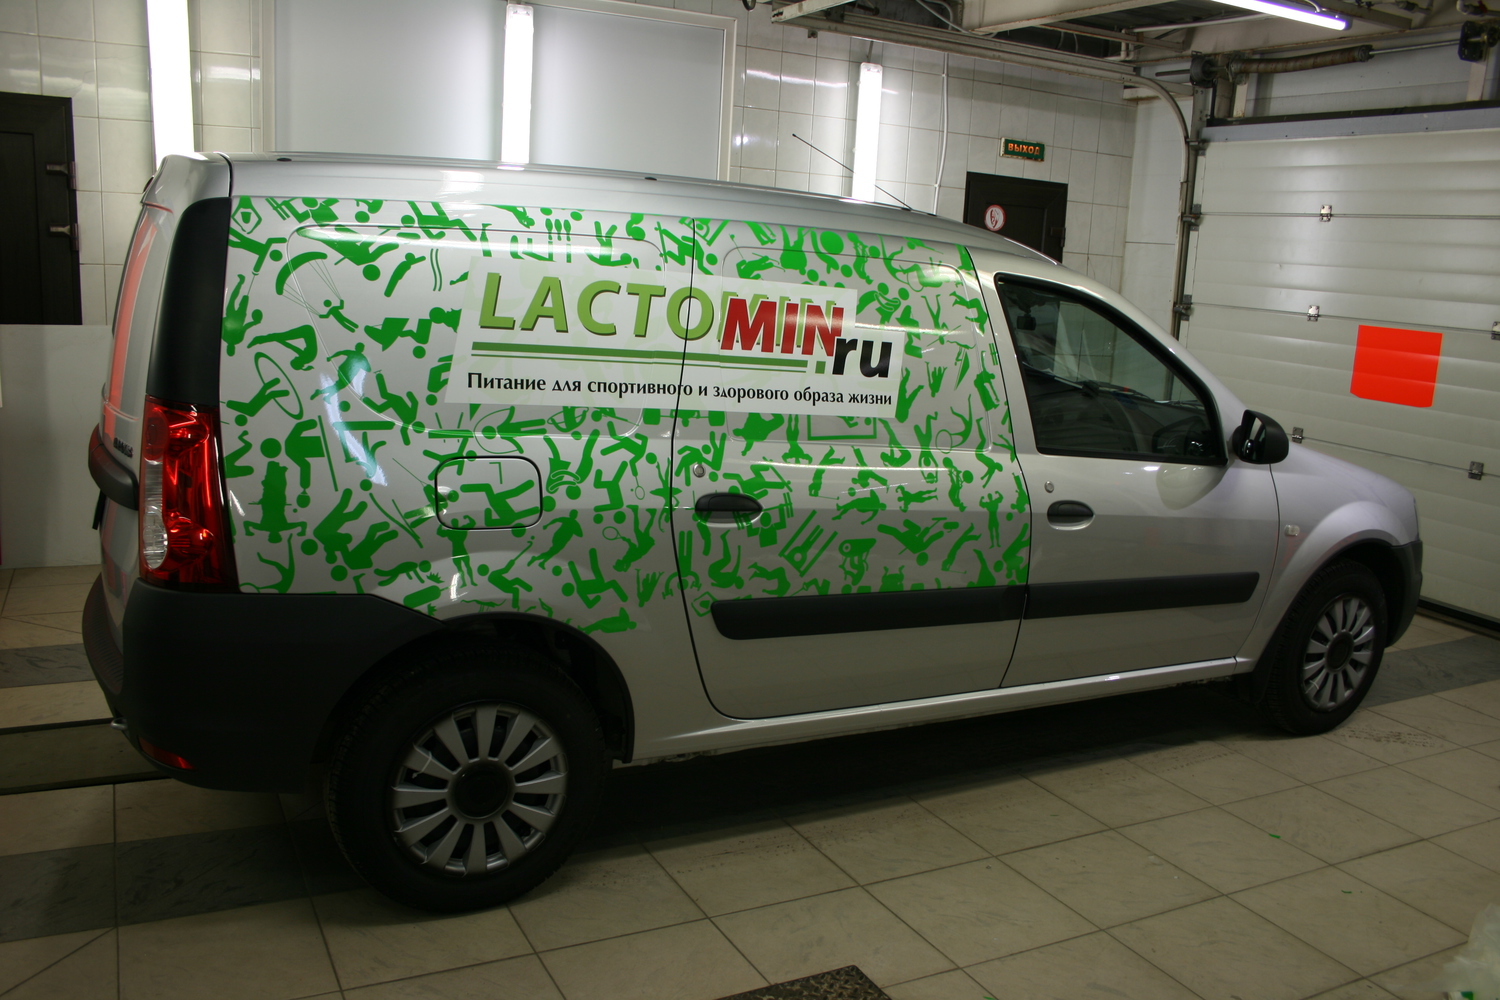 Оклейка авто рекламой за деньги москва: Доступ ограничен: проблема с IP